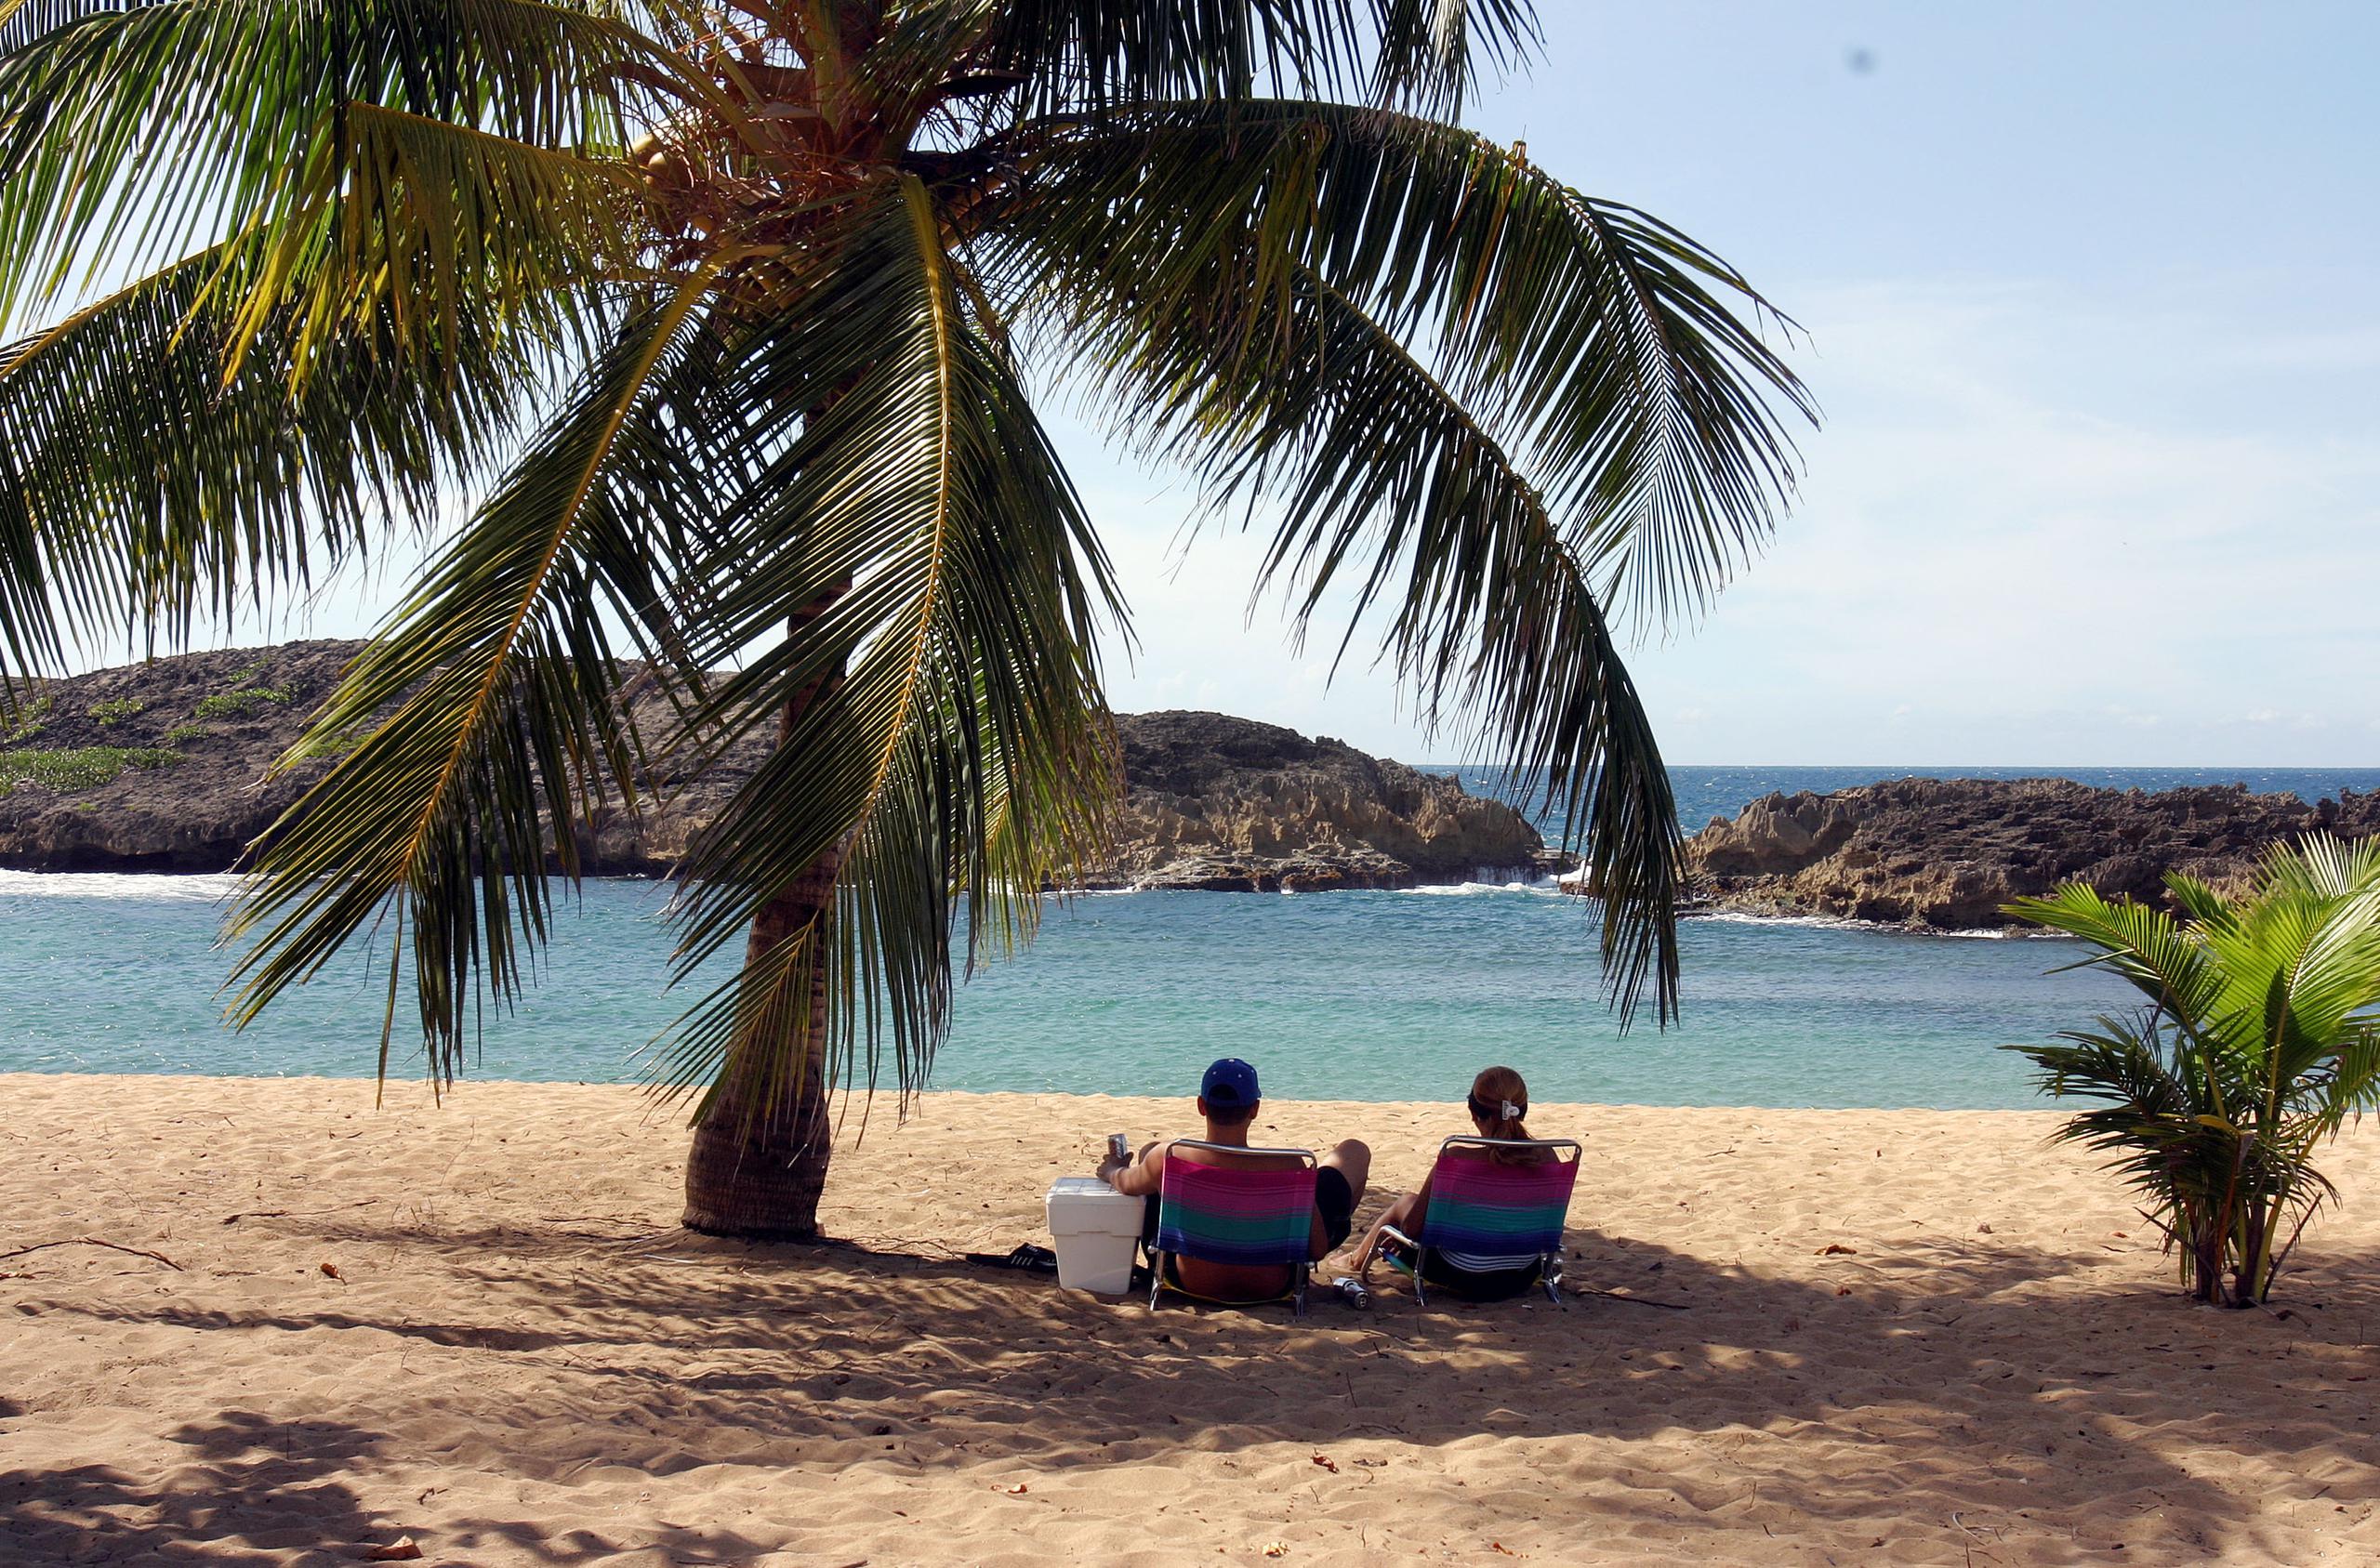 Los terrenos de la Playa Mar Chiquita colindan con otros atractivos naturales, culturales y turísticos de gran importancia.